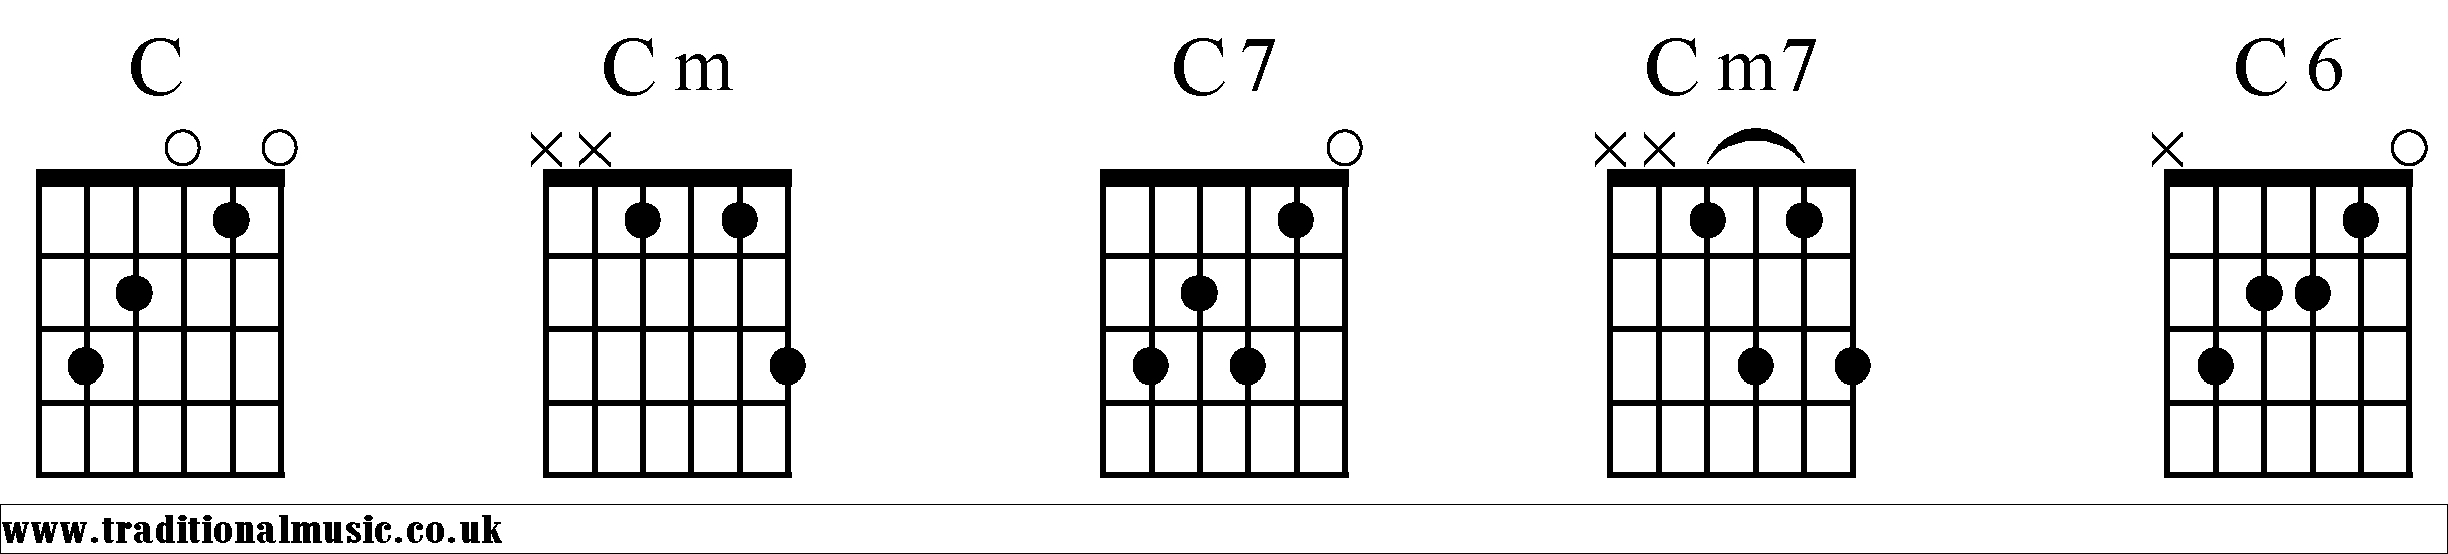 C Chords diagrams Guitar 1